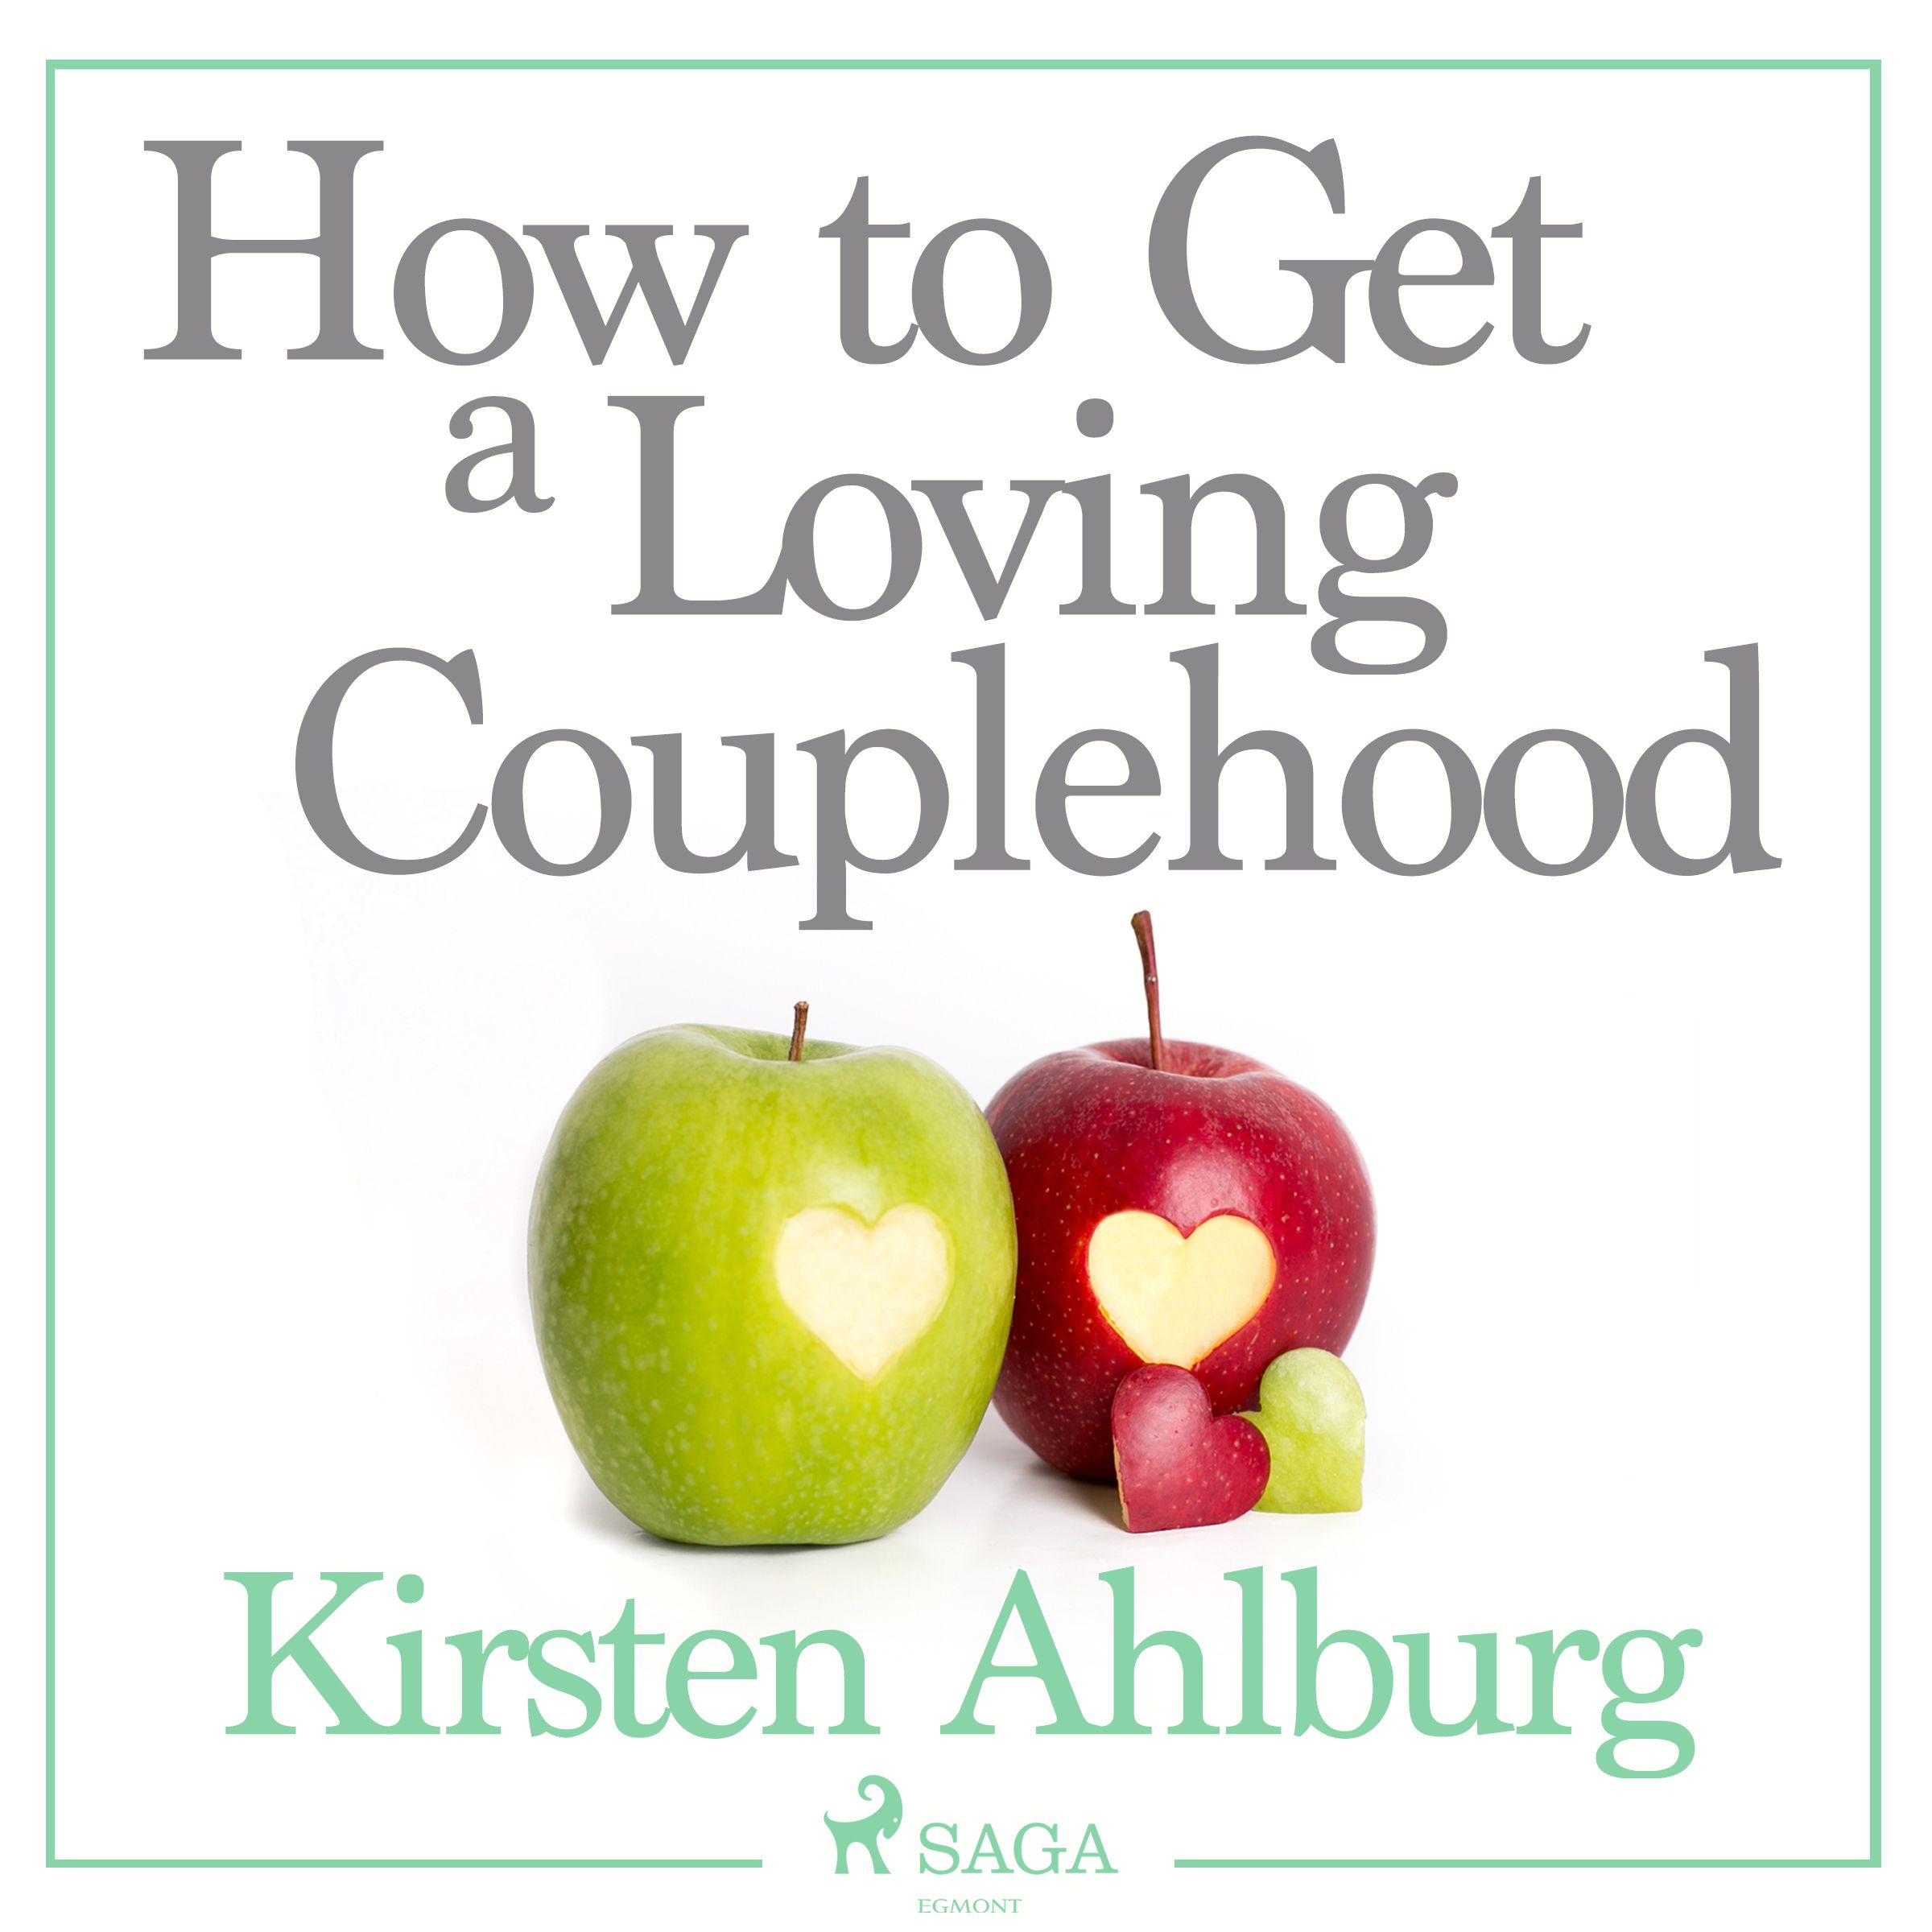 How to Get a Loving Couplehood, ljudbok av Kirsten Ahlburg